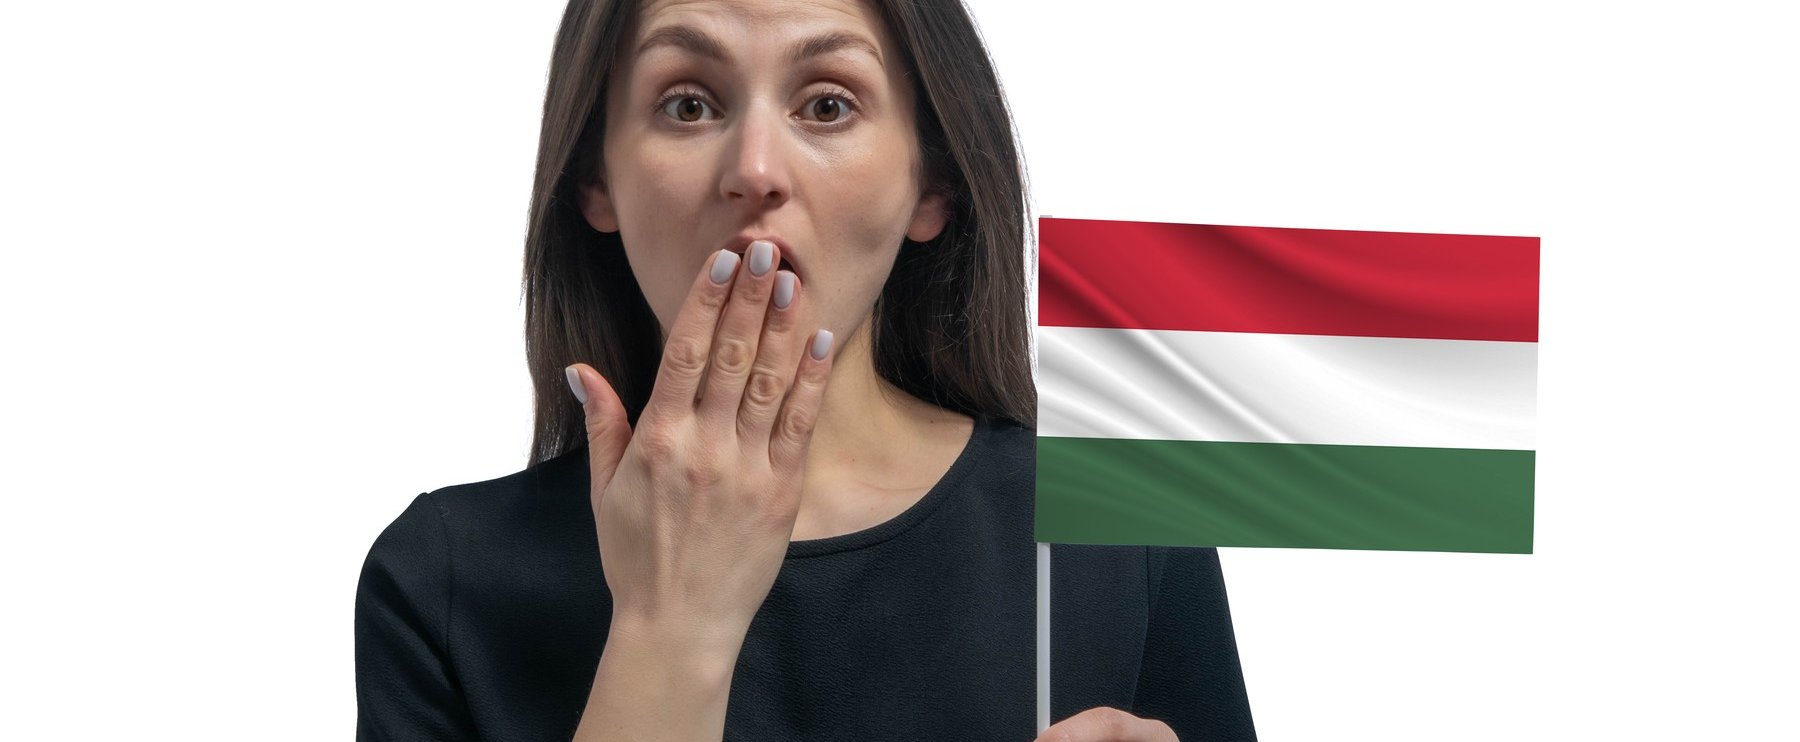 Egy külföldi szerint Magyarországon ezt az 5 dolgot tilos megcsinálni, az egyiken mindenki meg fog lepődni